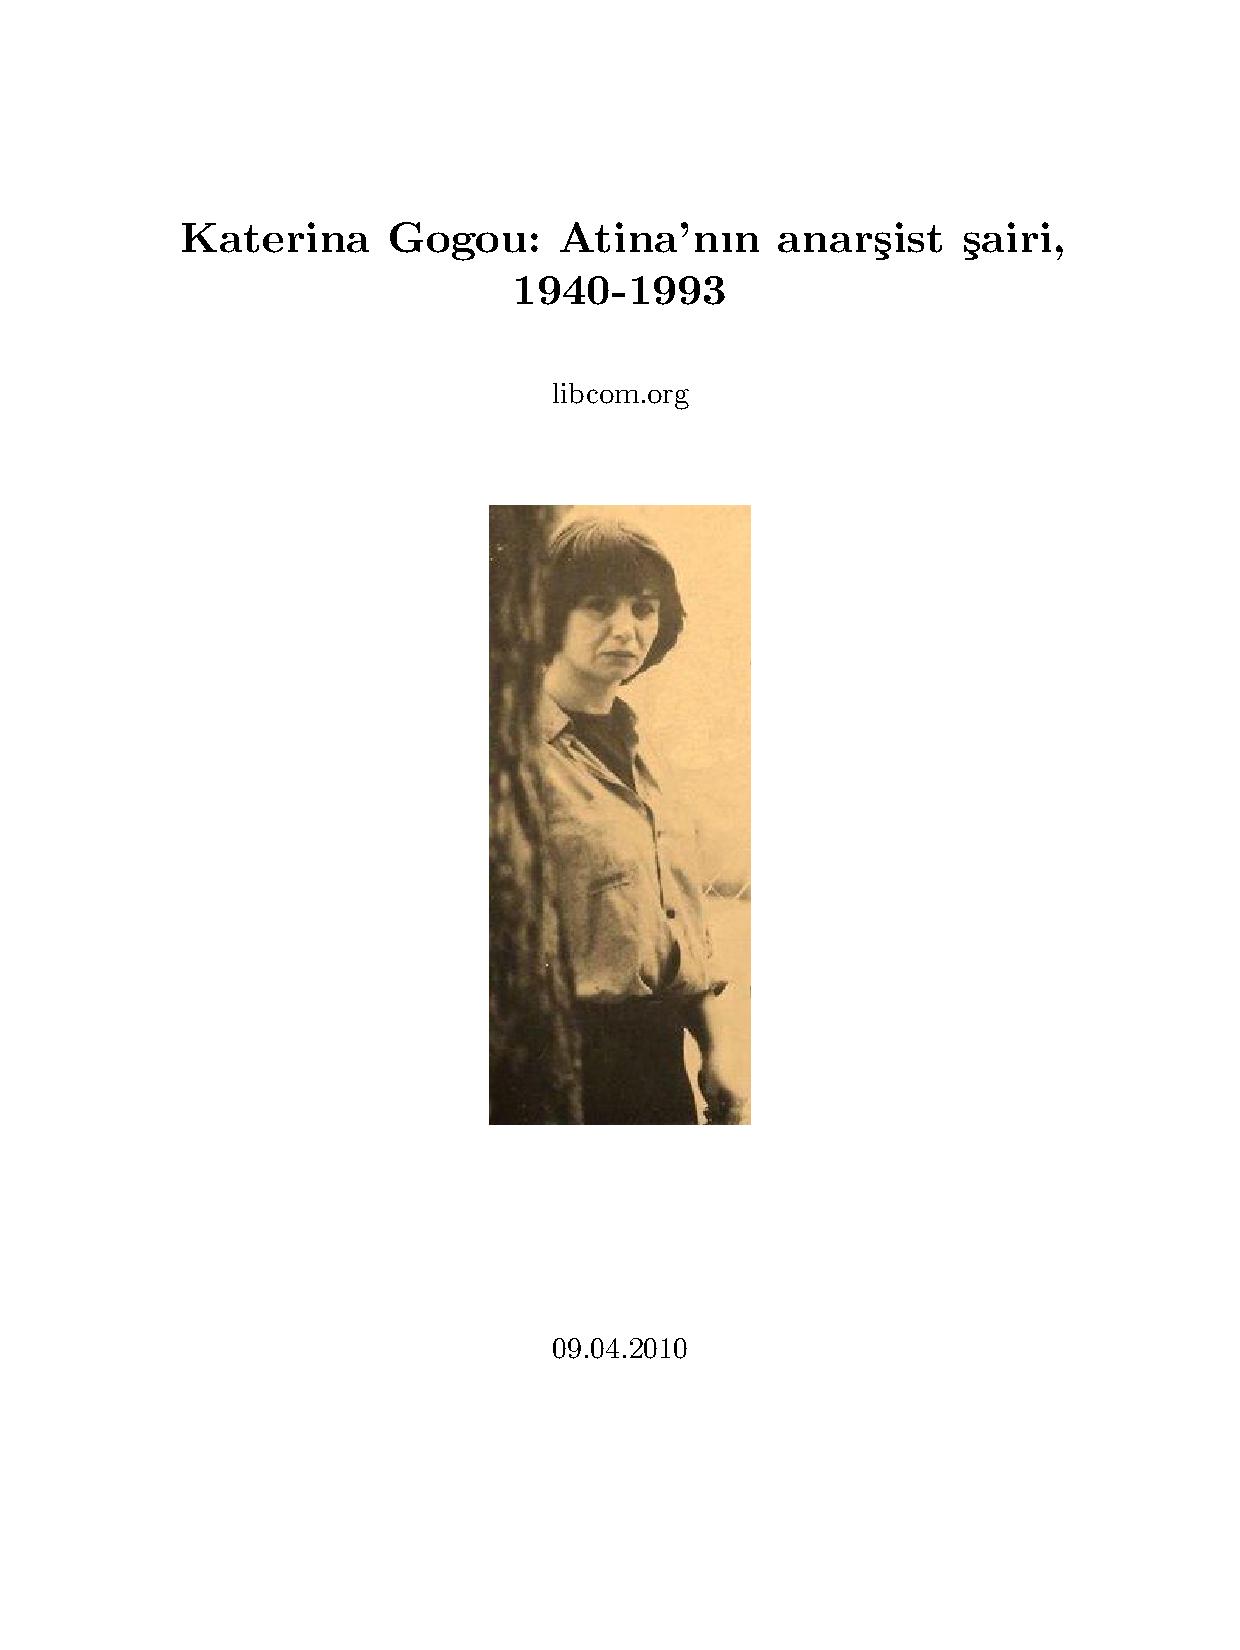 Katerina Gogou: Atina'nın anarşist şairi, 1940-1993 - libcom.org